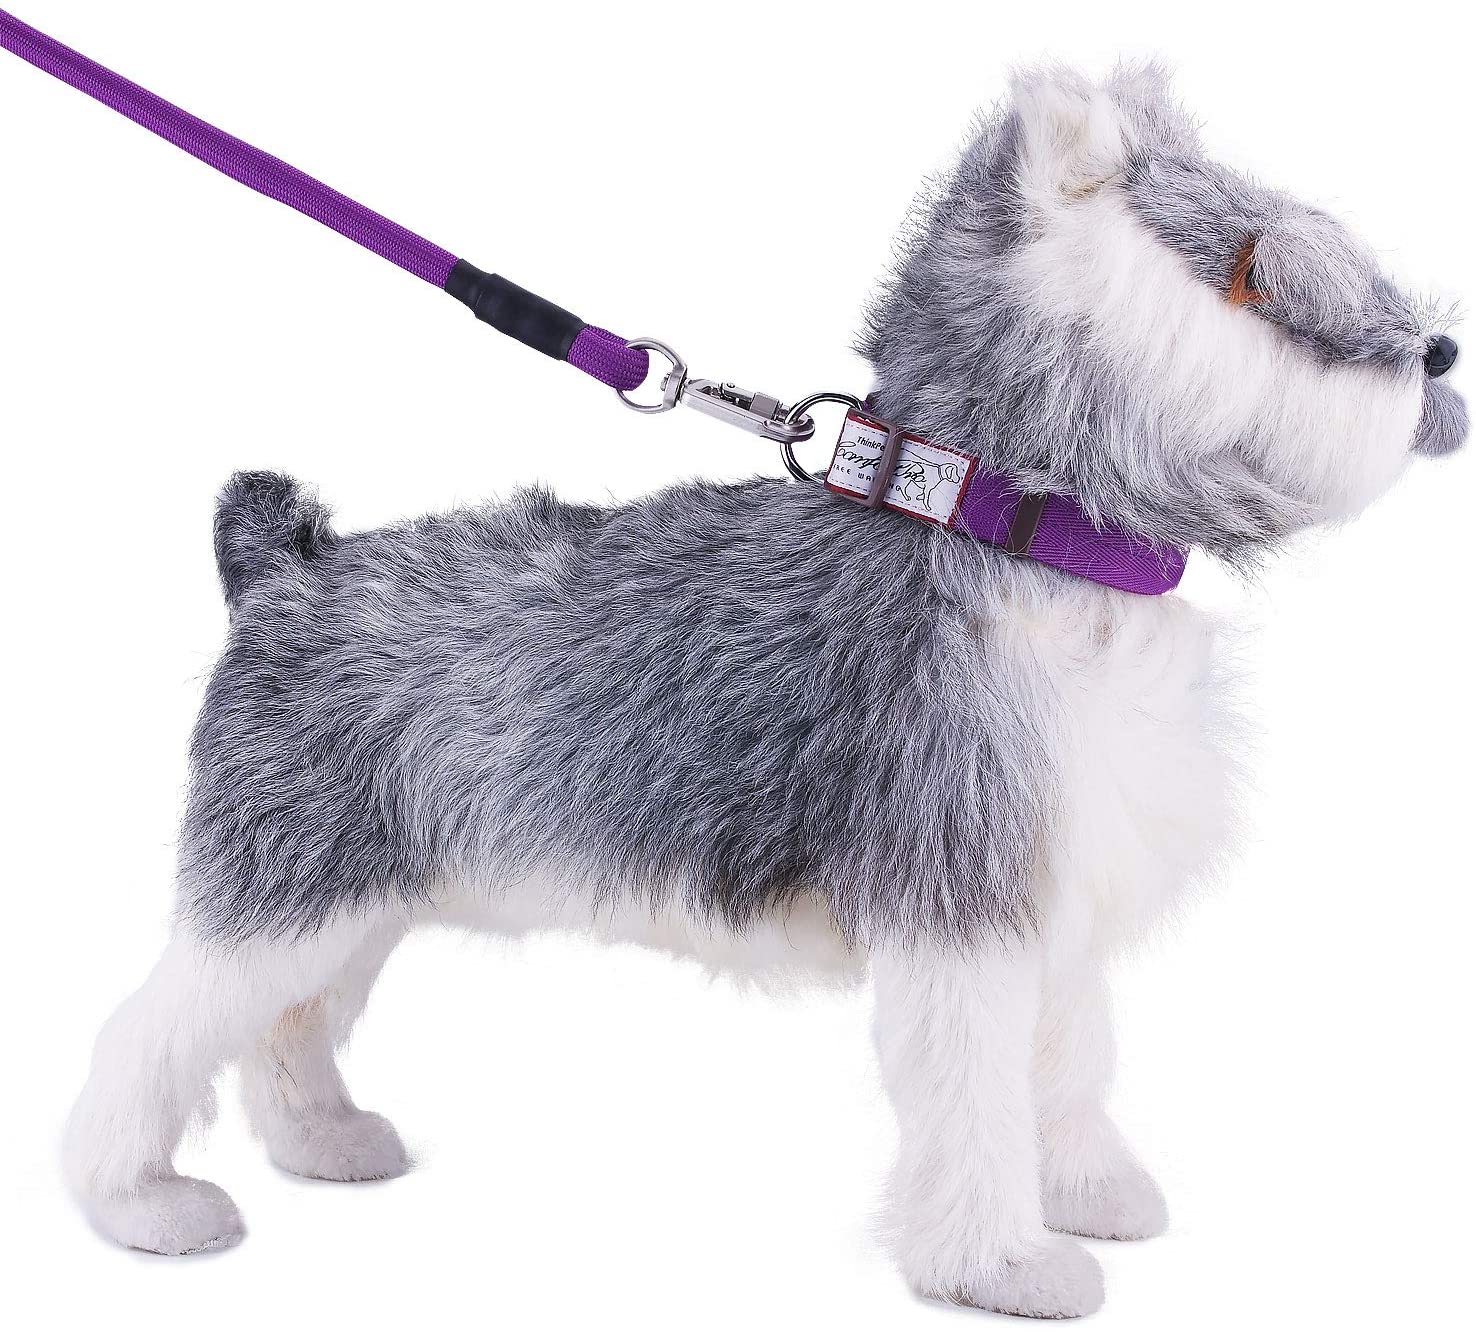  ThinkPet ComfortPro Kit de Correa y Collar Perro Conjunto Correa de Cuerda Resistente y Collar Ajustable para Perros Mediano Grande para Paseo 